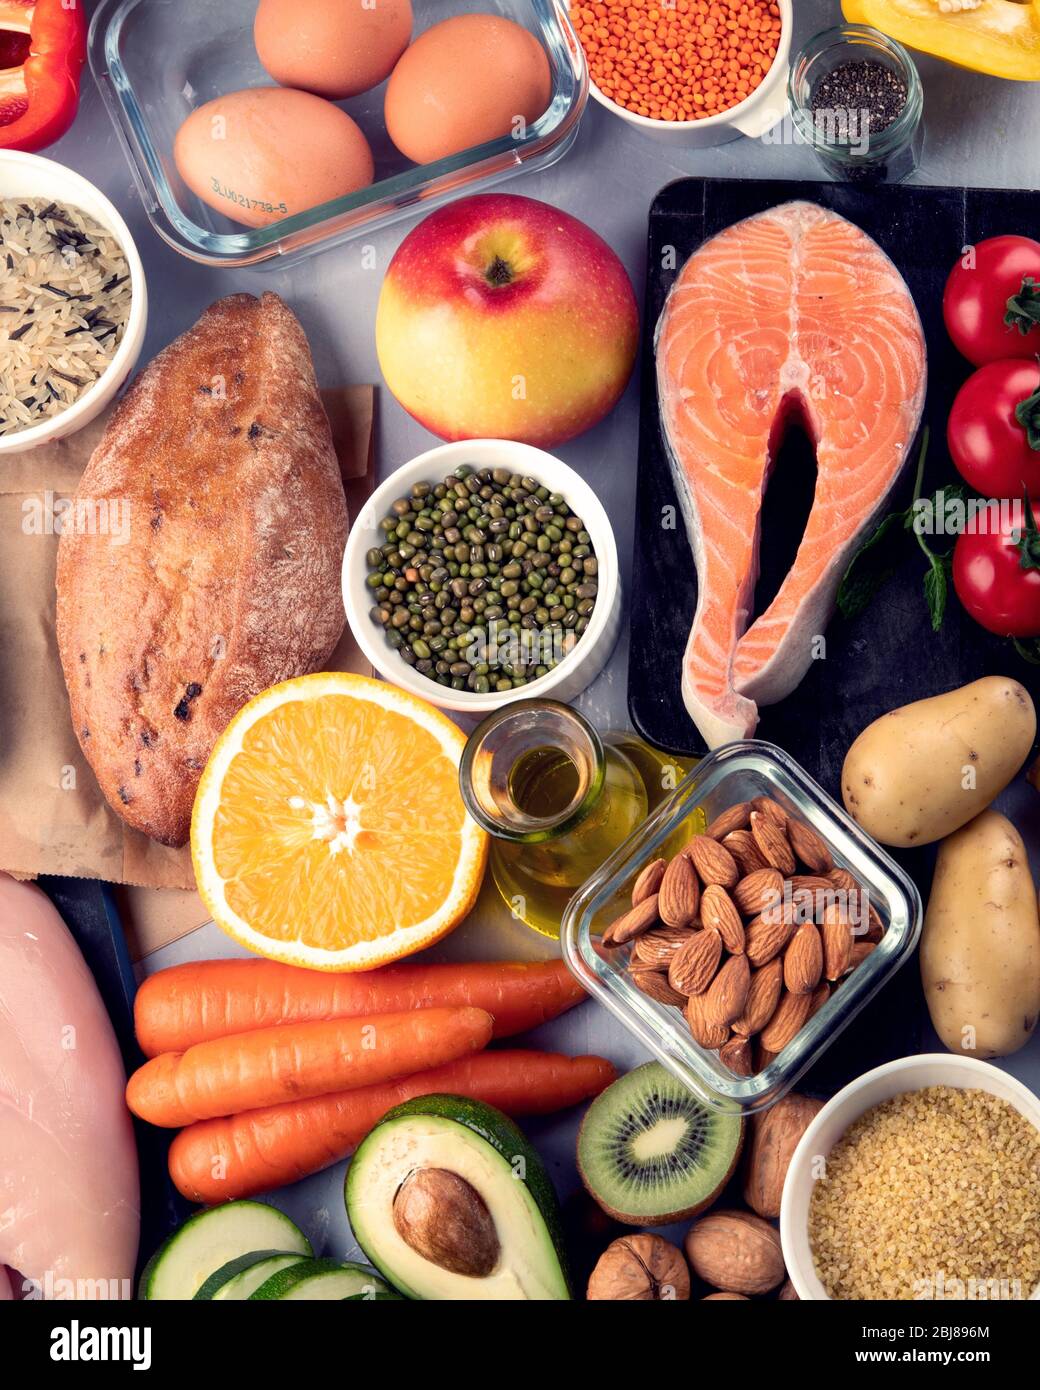 Ausgewogene Ernährung Lebensmittel Hintergrund.. Ernährung, saubere  Ernährung Lebensmittel Konzept. Diät-Plan mit Vitaminen und Mineralstoffen  Stockfotografie - Alamy